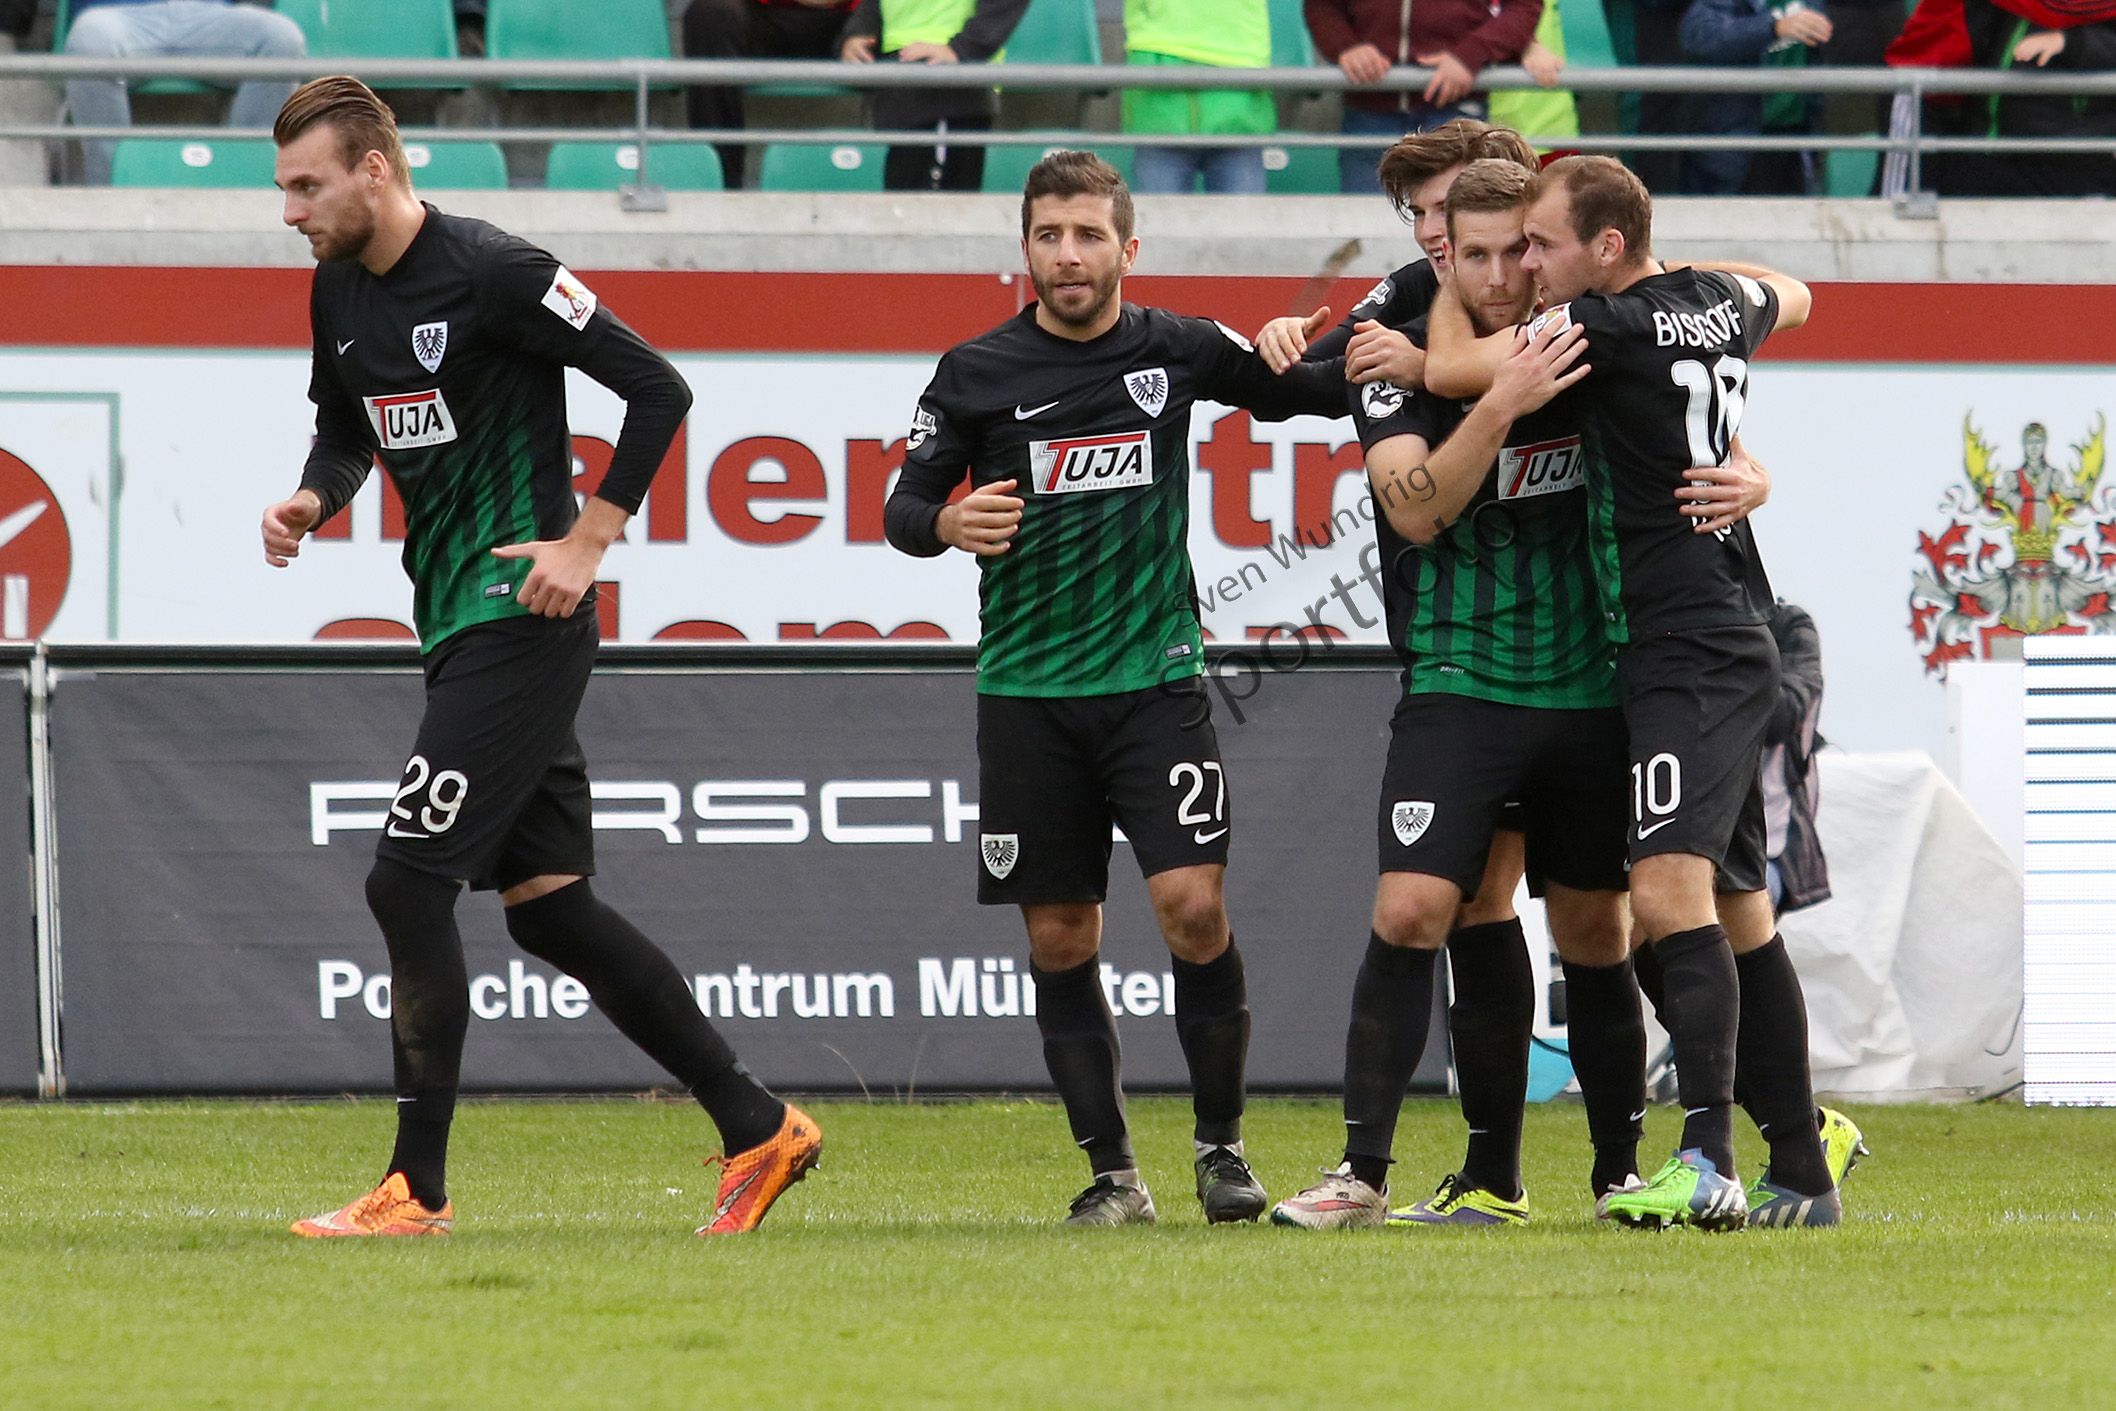 3.Liga - 16/17 - SC Preussen Muenster vs. Holstein Kiel